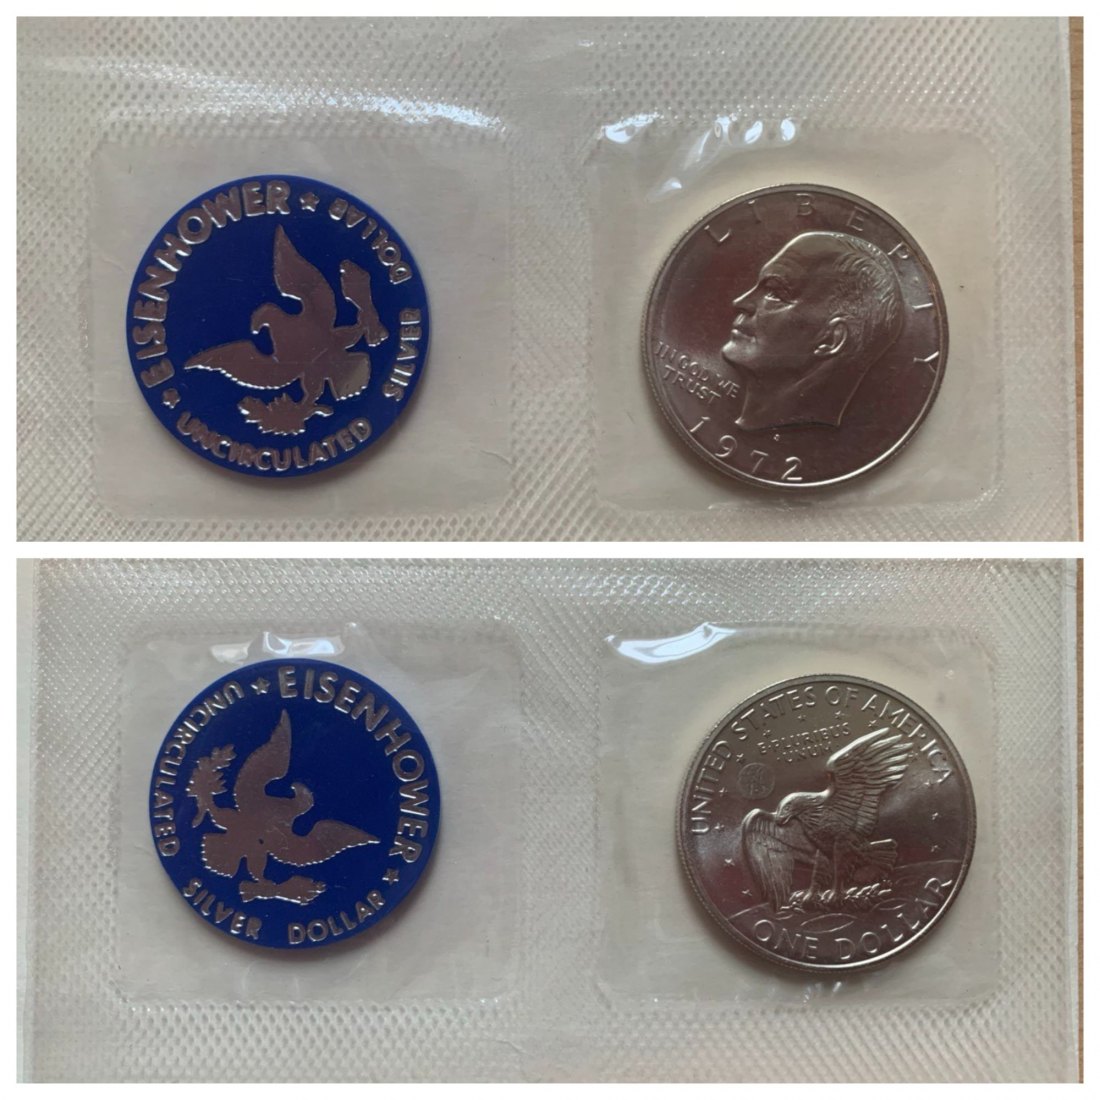  USA 1$ 1972 BU Unzirkulierter Silberdollar von Eisenhower   